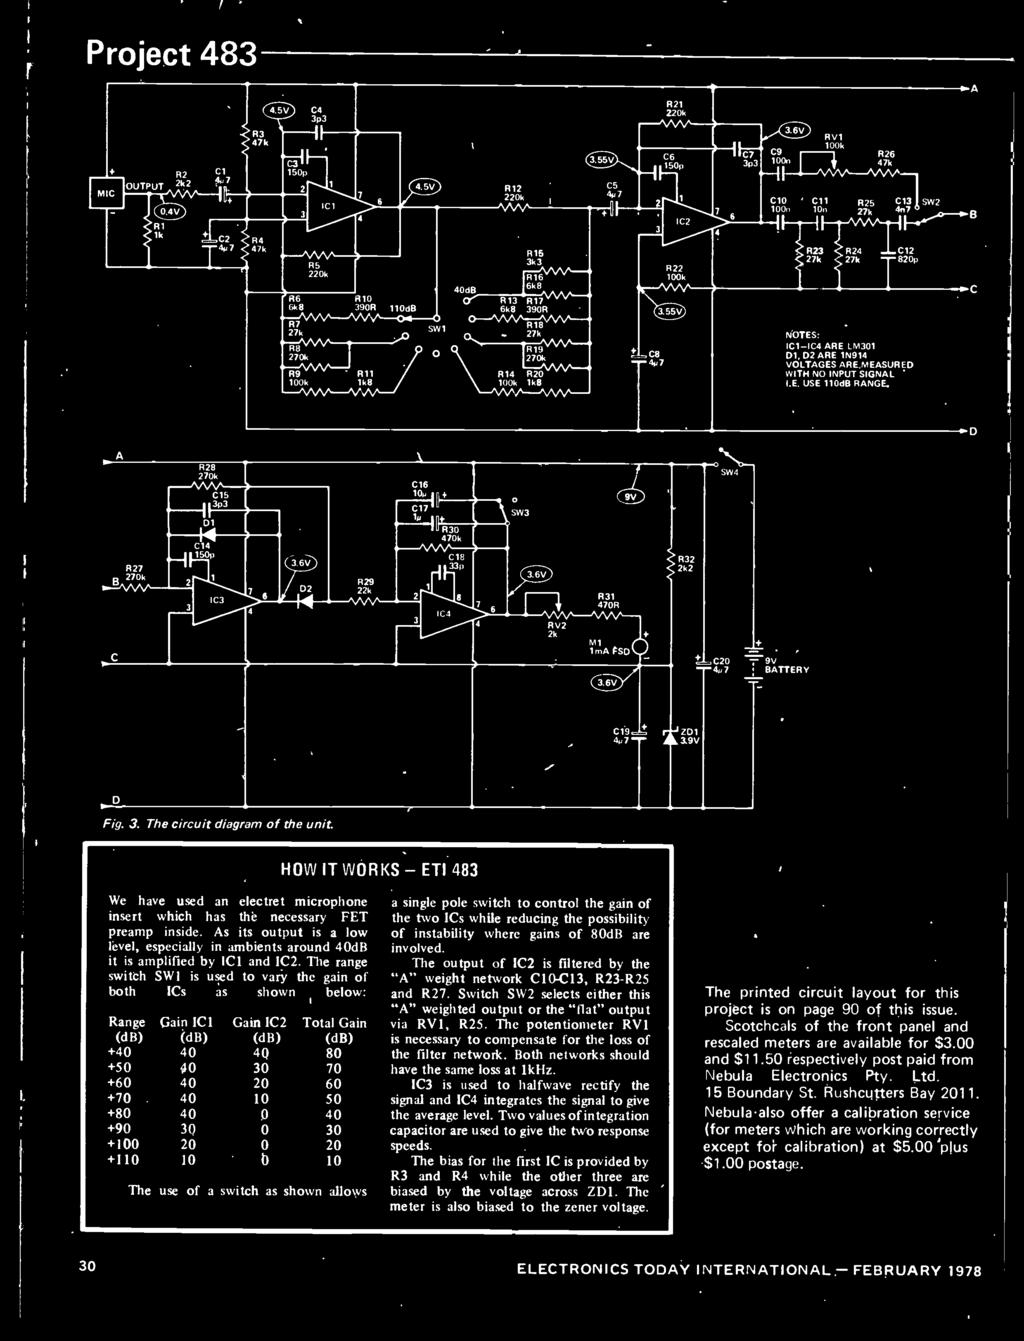 6V SW4 S R32 2k2 ác20 4u7 9V BATTERY C19ó 41,7 ZD1 19V D Fig. 3. The circuit diagram of the unit.